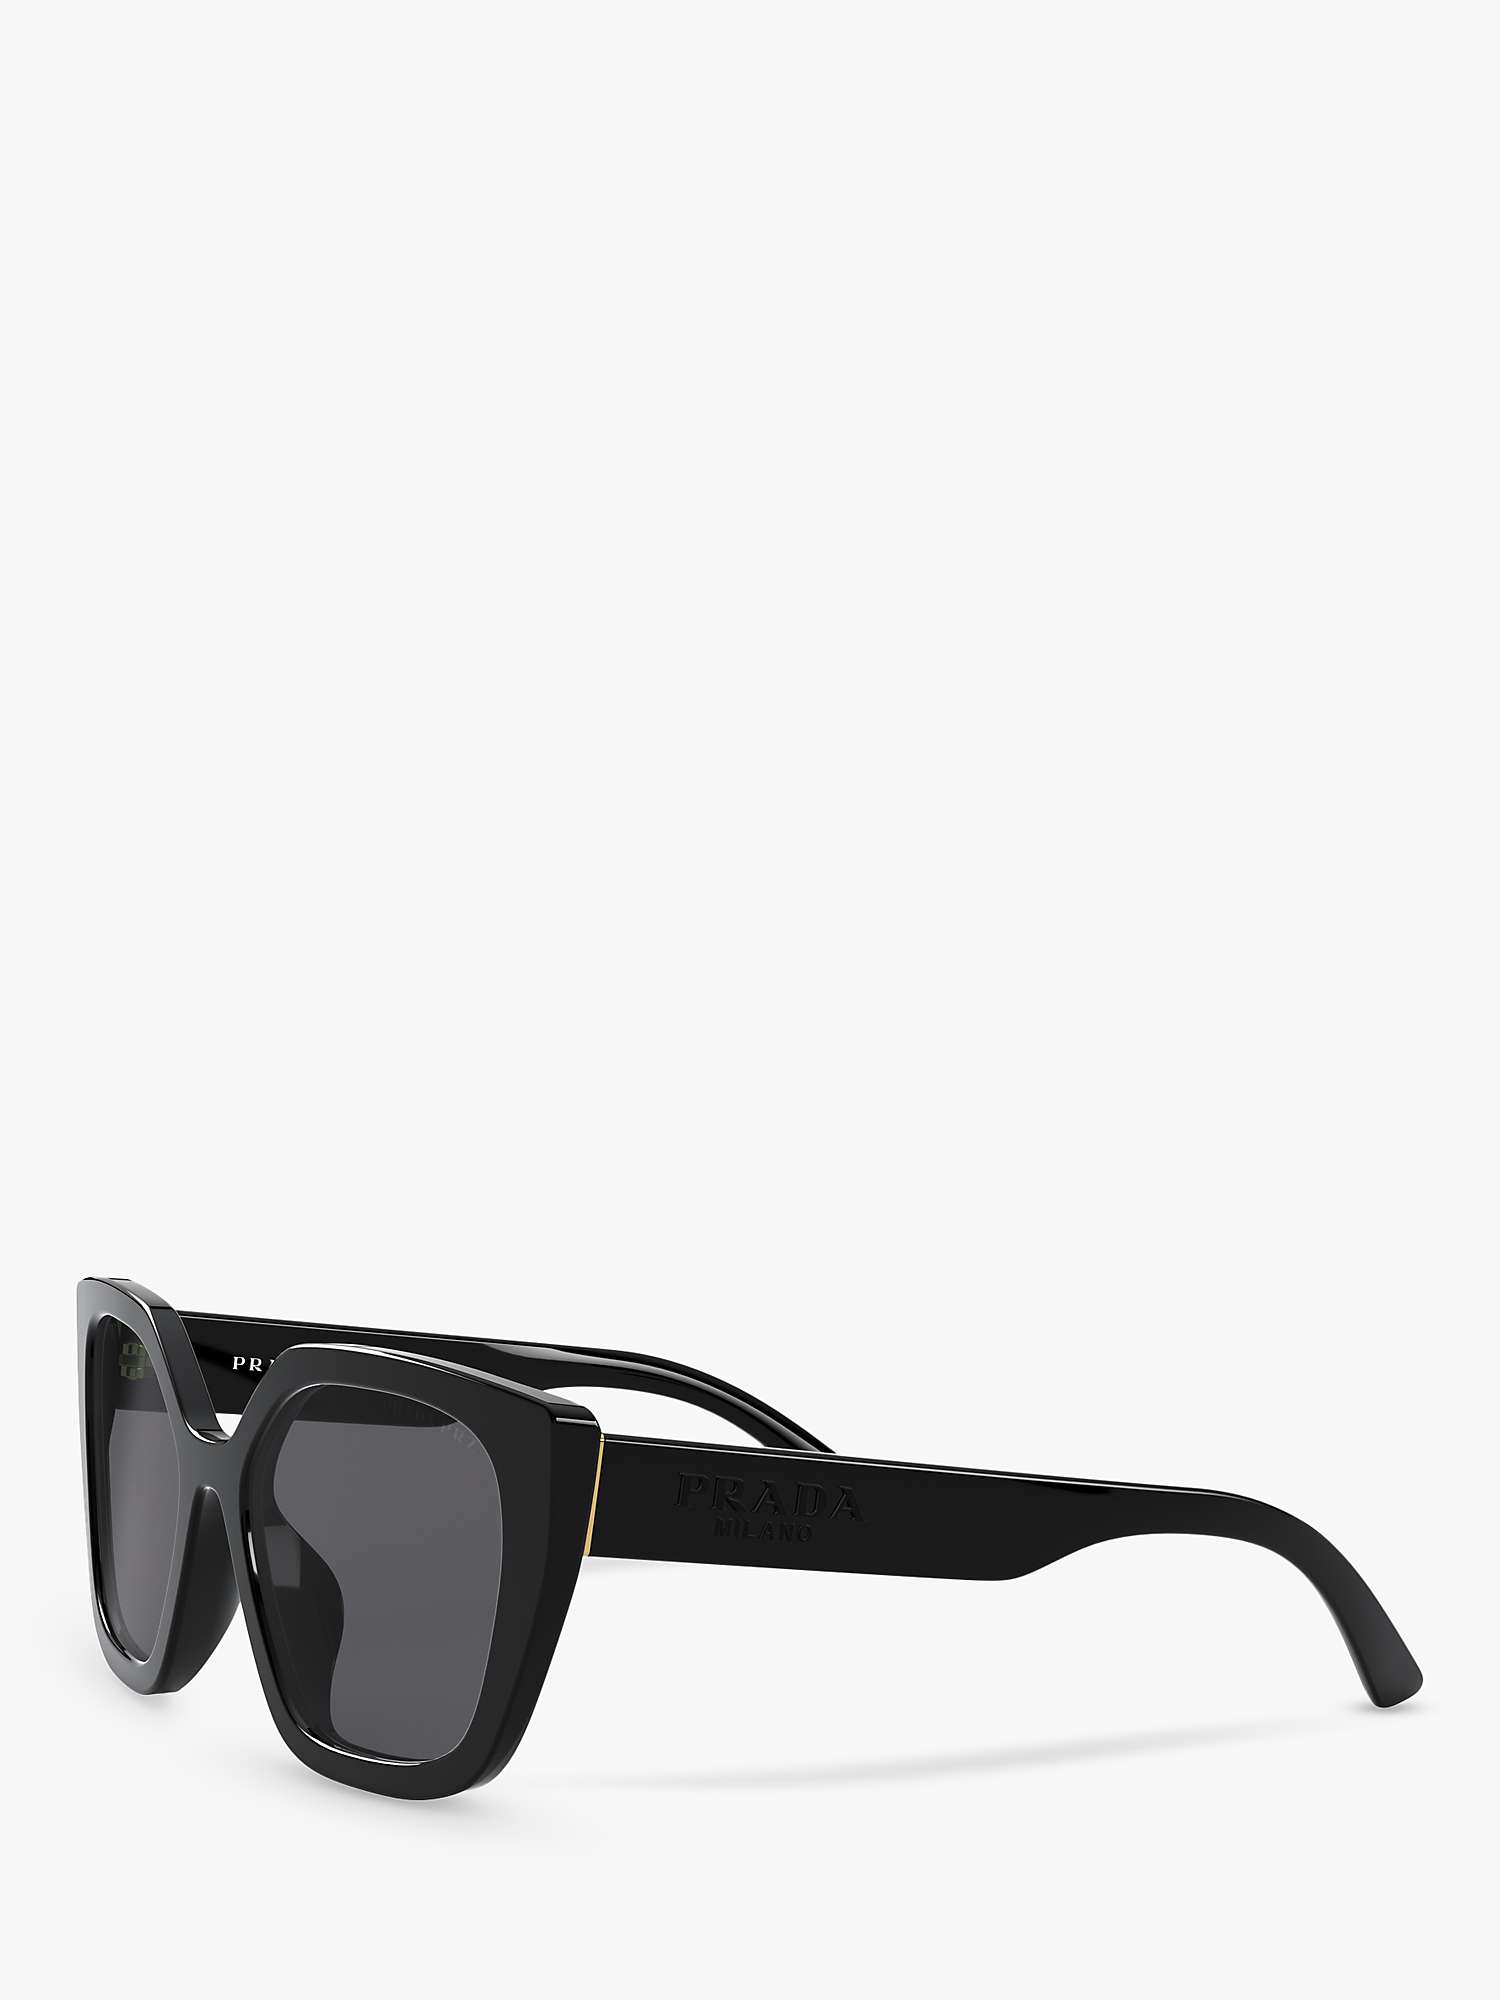 Buy Prada PR 24XS Women's Polarised Square Sunglasses, Black/Grey Online at johnlewis.com